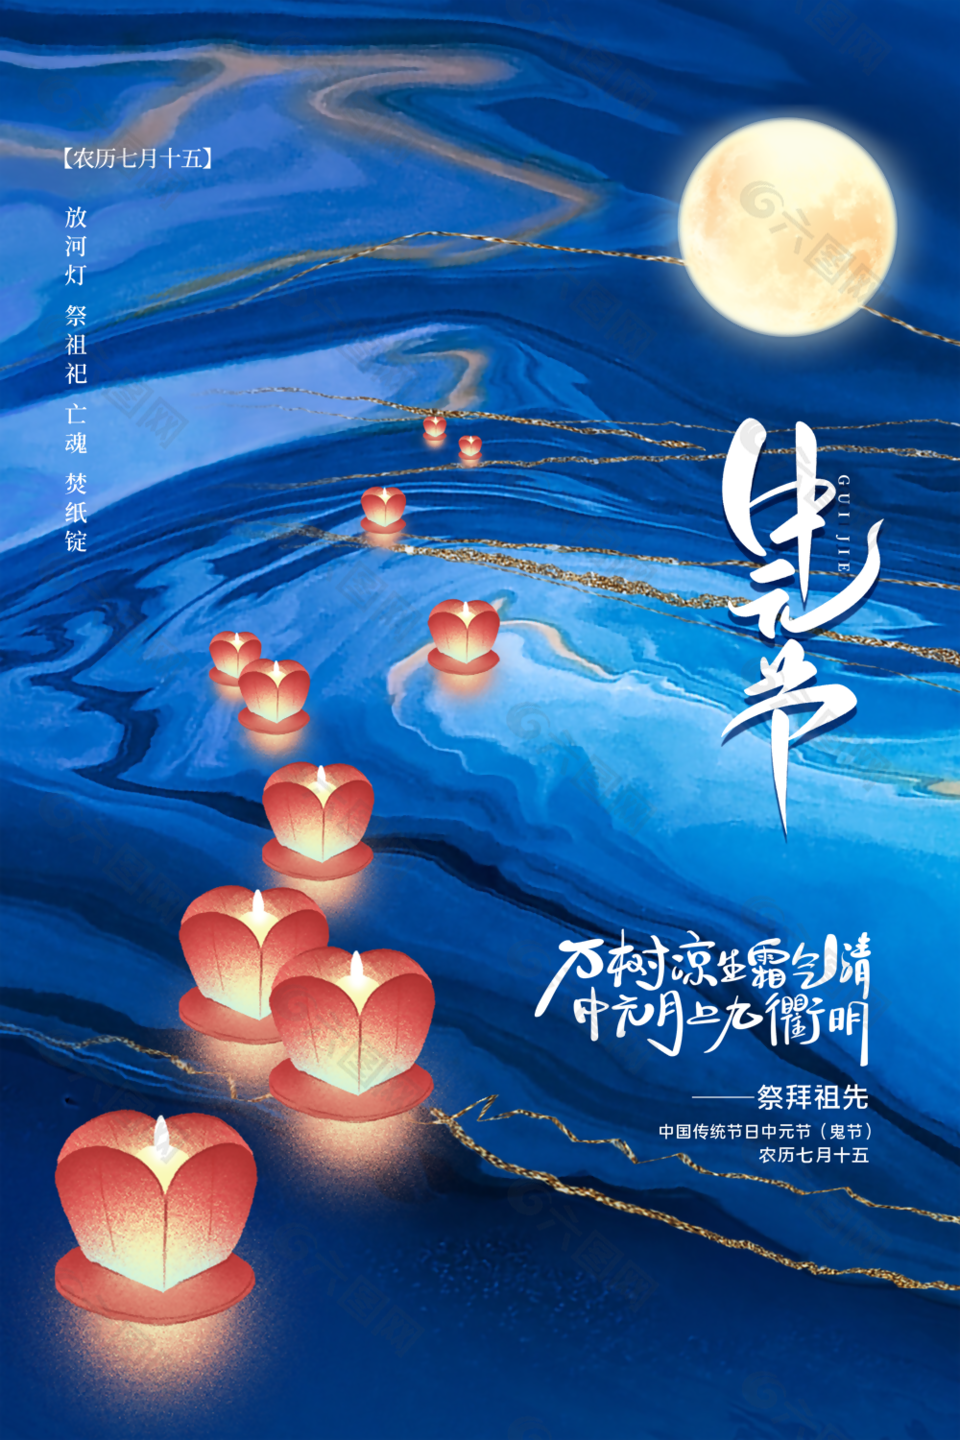 质感手绘国风传统节日中元节海报图设计